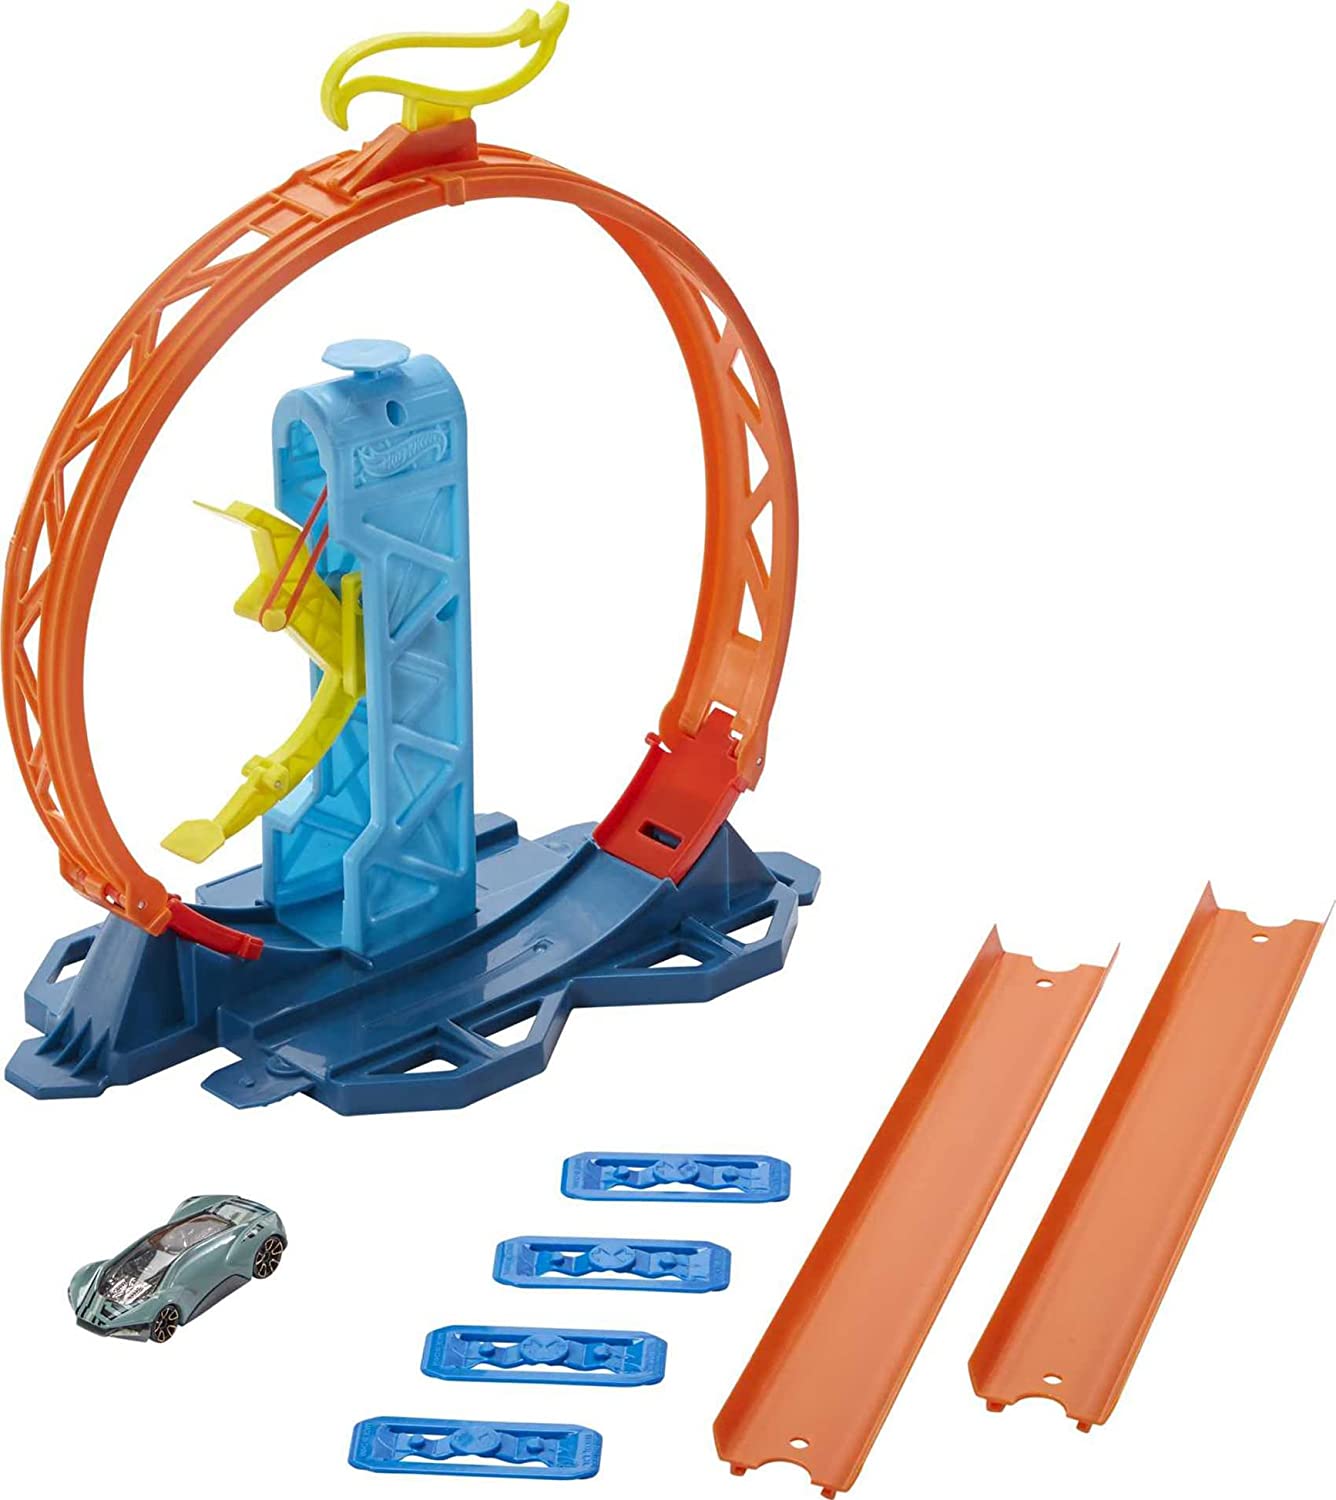 Mattel - Hot Wheels - Track Builder - Loop Kicker Pack